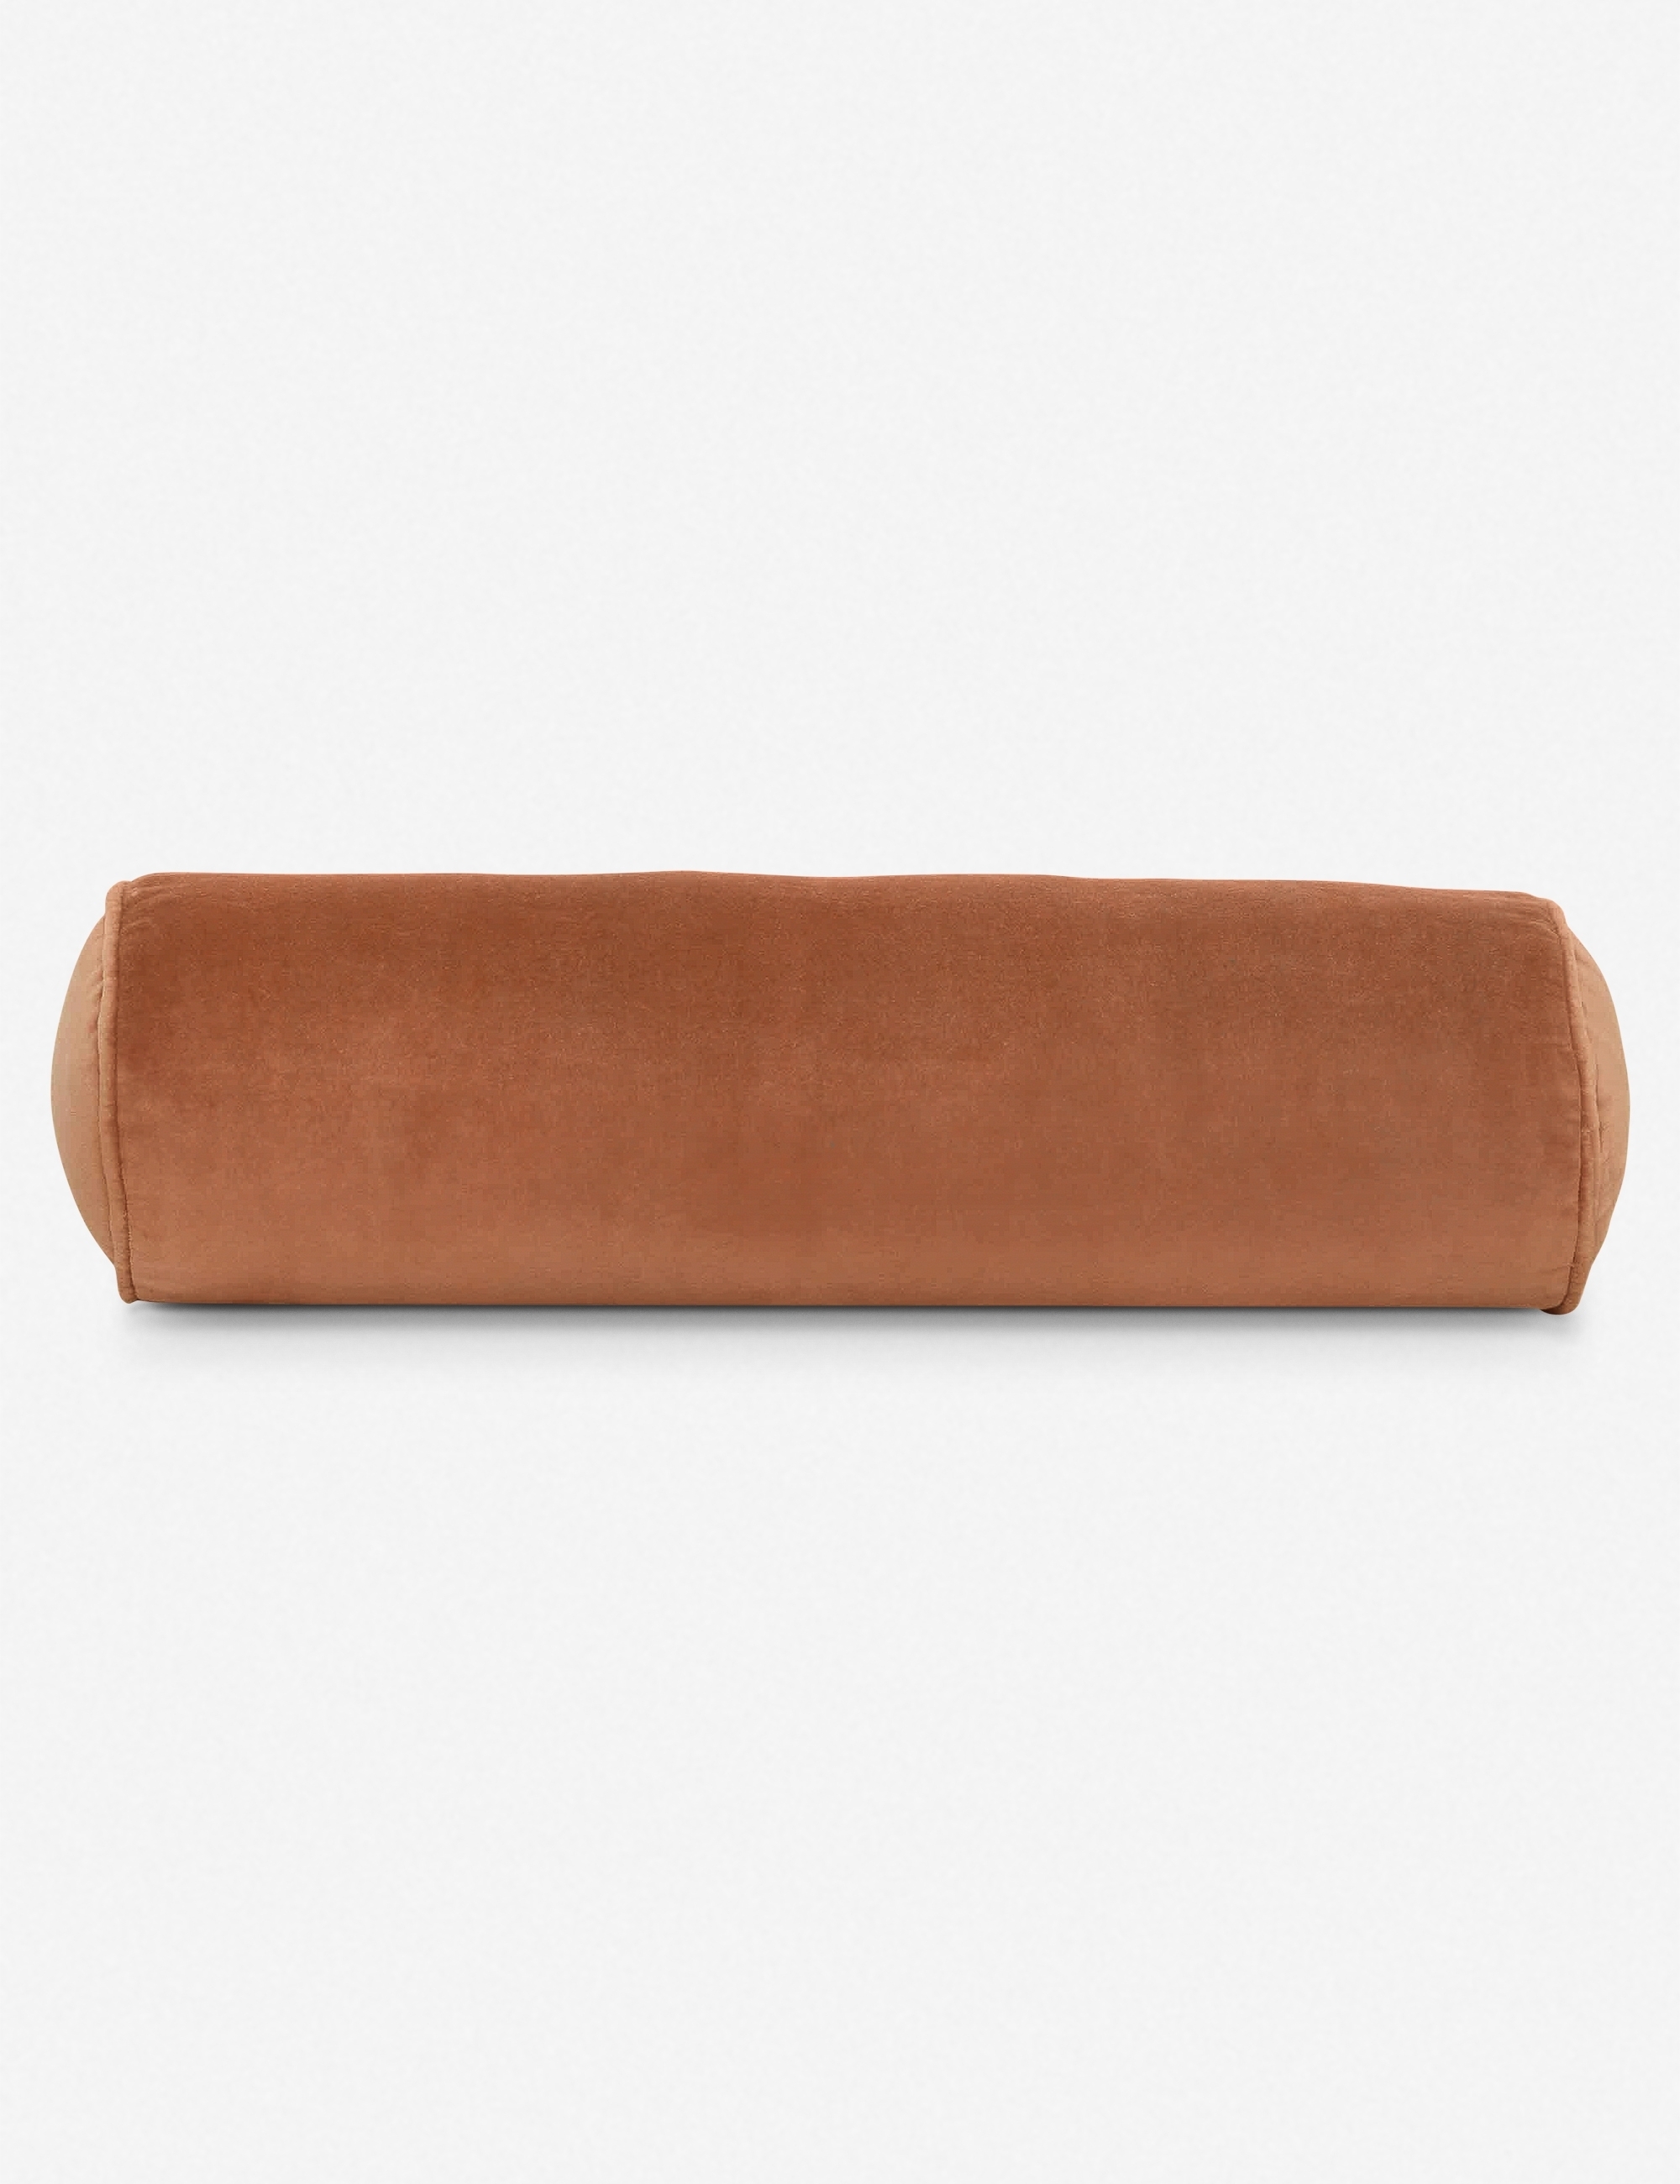 Sabine Velvet Bolster Pillow, Burnt Orange, 5.5" x 18" - Image 0